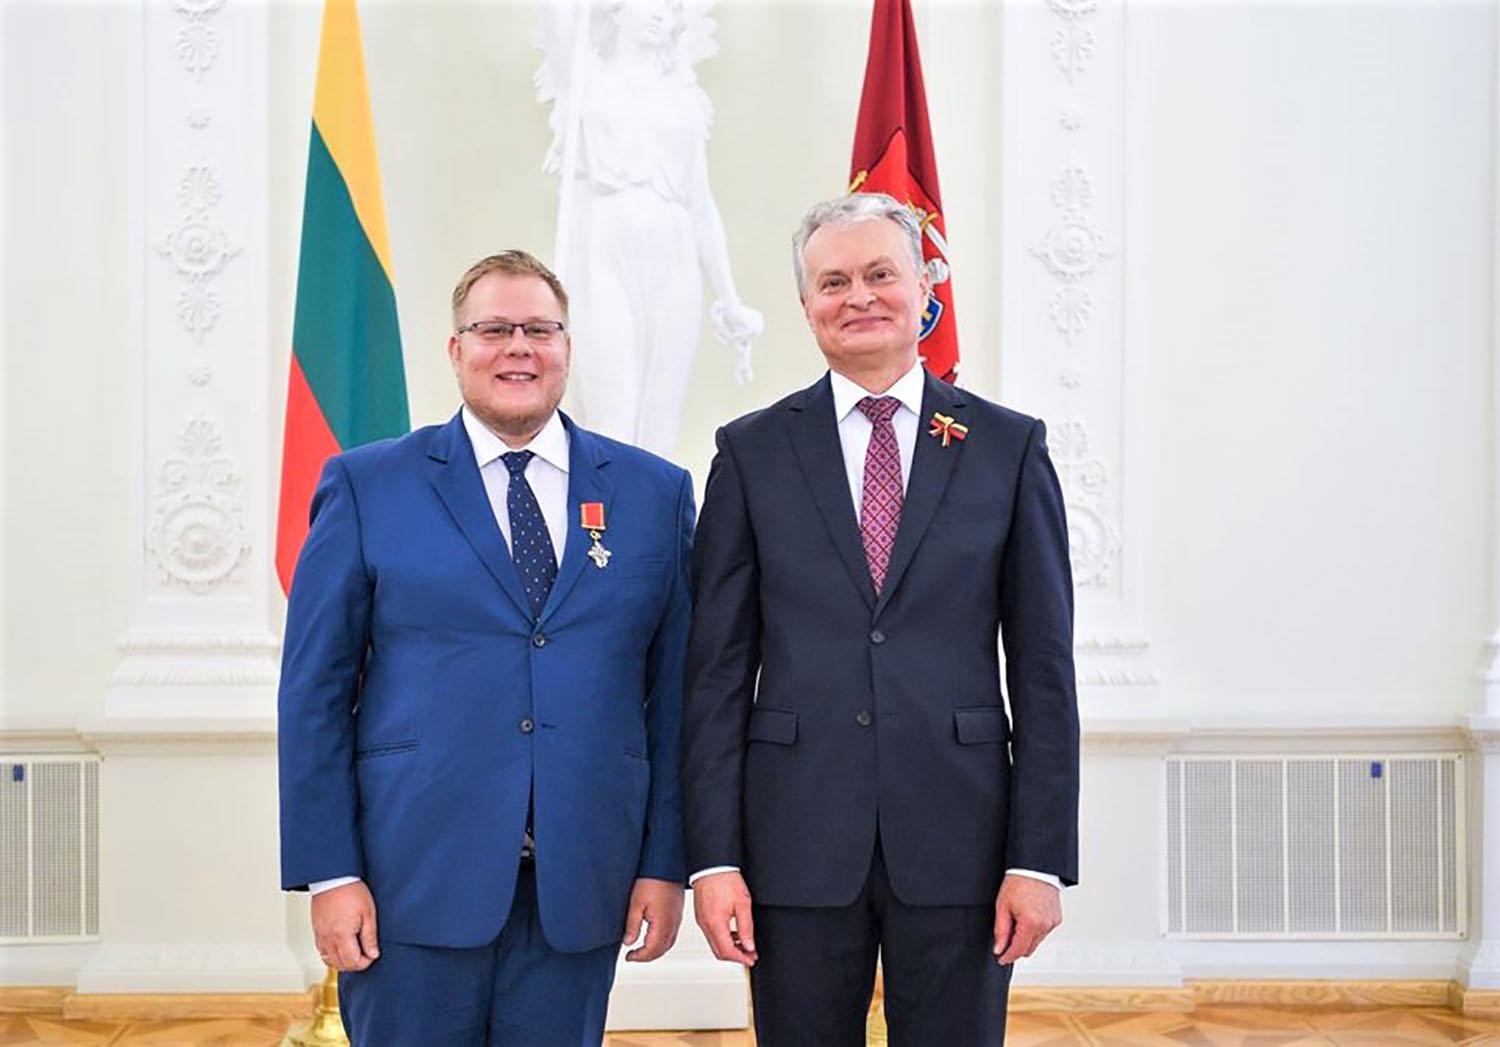 Ukmergės gydytojui – garbingas apdovanojimas / Šalies prezidentas D. Miezenui įteikė ordino „Už nuopelnus Lietuvai“ Riterio kryžių.  Roberto Dačkaus nuotr.